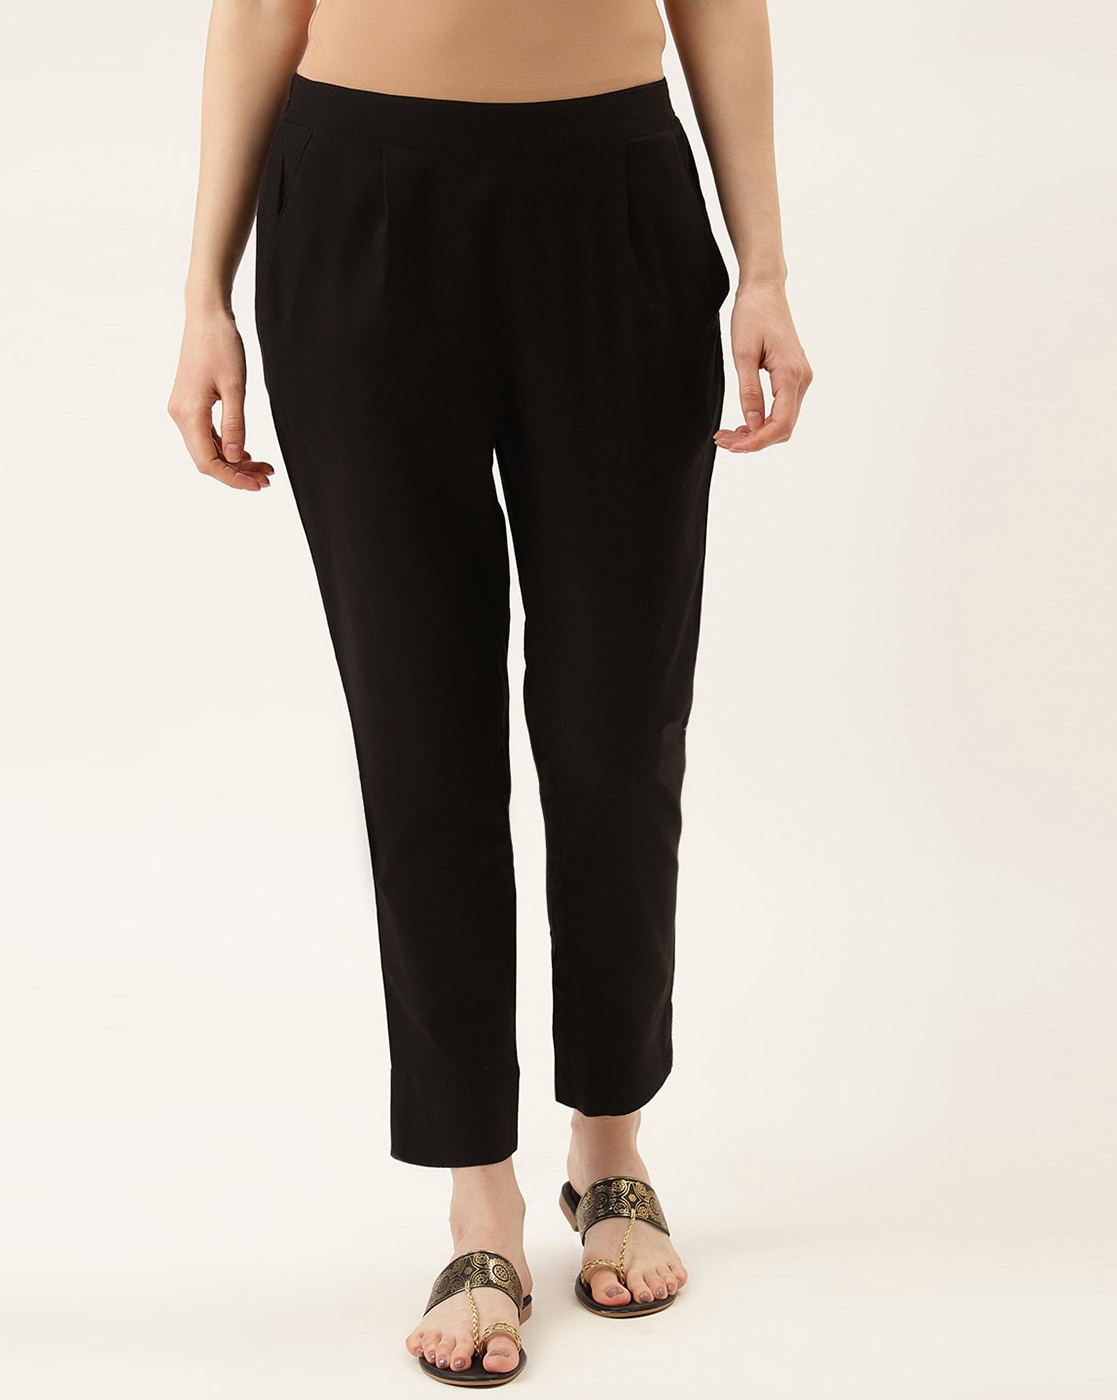 Topshop | Pants & Jumpsuits | Topshop Black Smartie Trousers High Waisted  Wide Leg Crop Dress Pants Size 2 | Poshmark